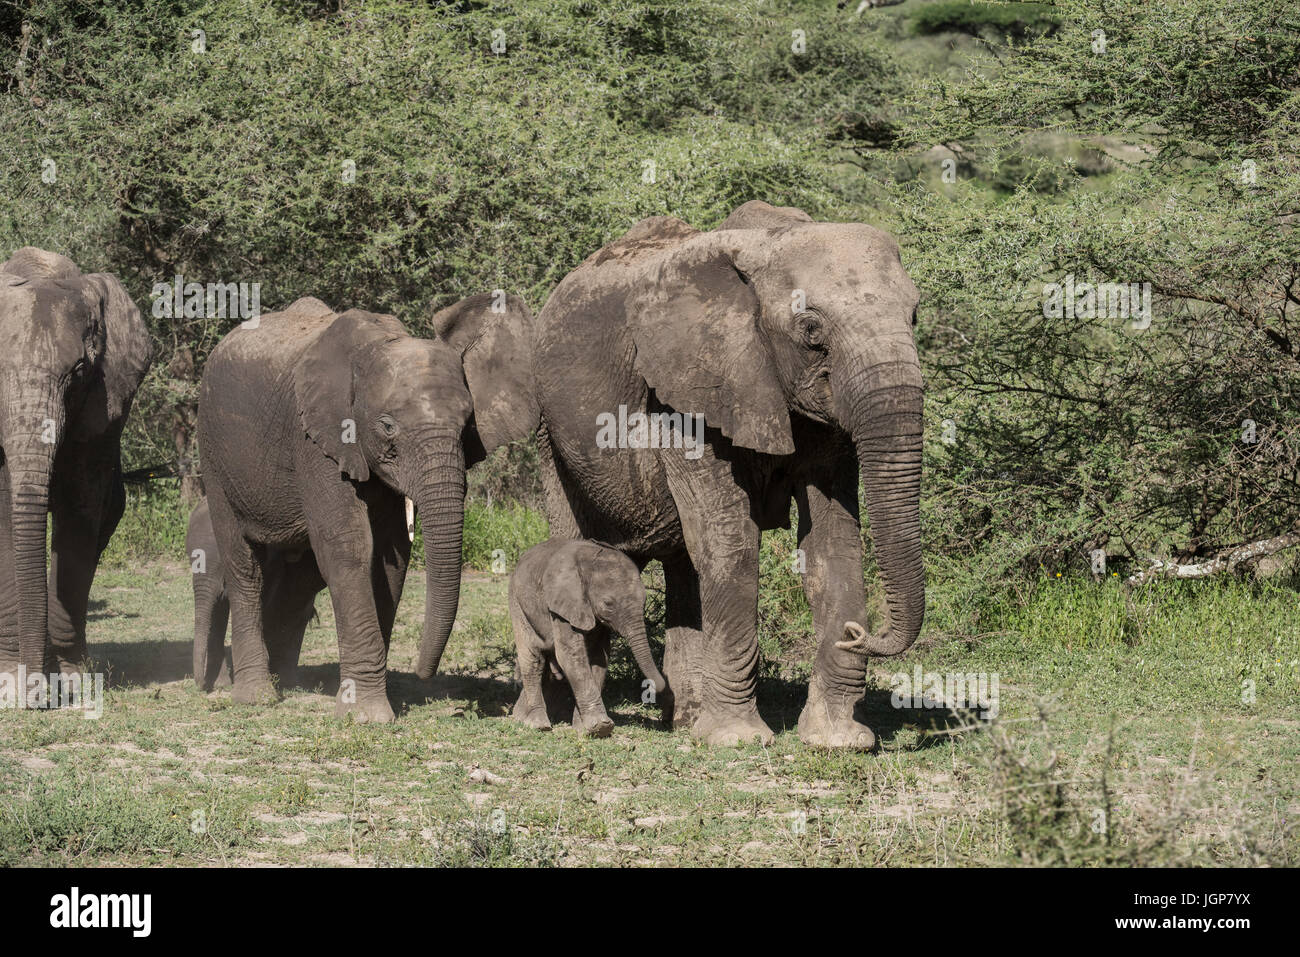 Elephant family, Ngorongoro Conservation Area, Tanzania Stock Photo